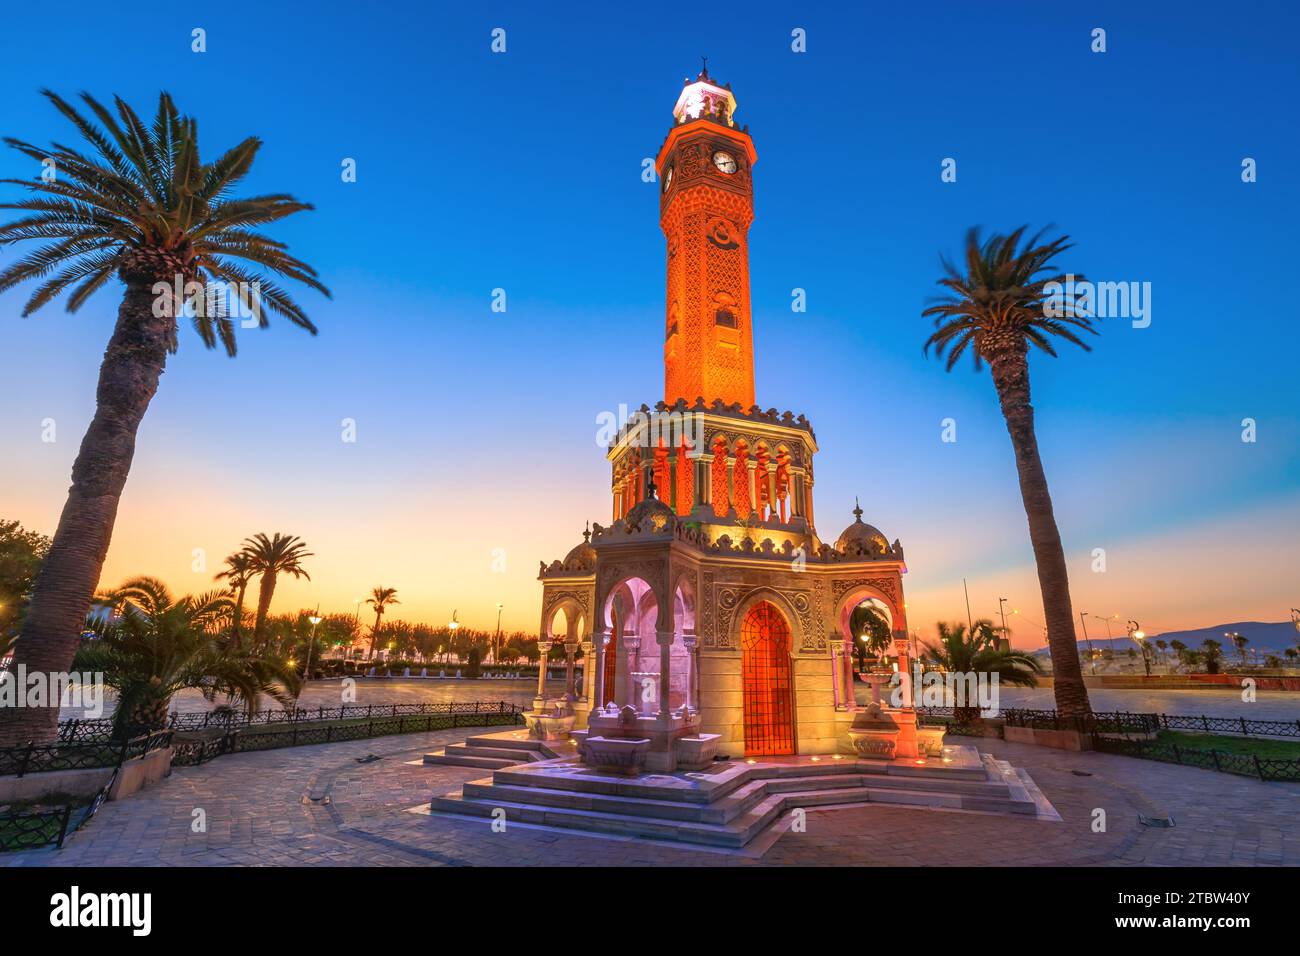 Konak Square Clock Tower von Izmir in der Türkei. Nachts beleuchtet, verleiht der Turm dem belebten Platz einen Hauch von Zauber und ist ein Zeugnis dafür Stockfoto